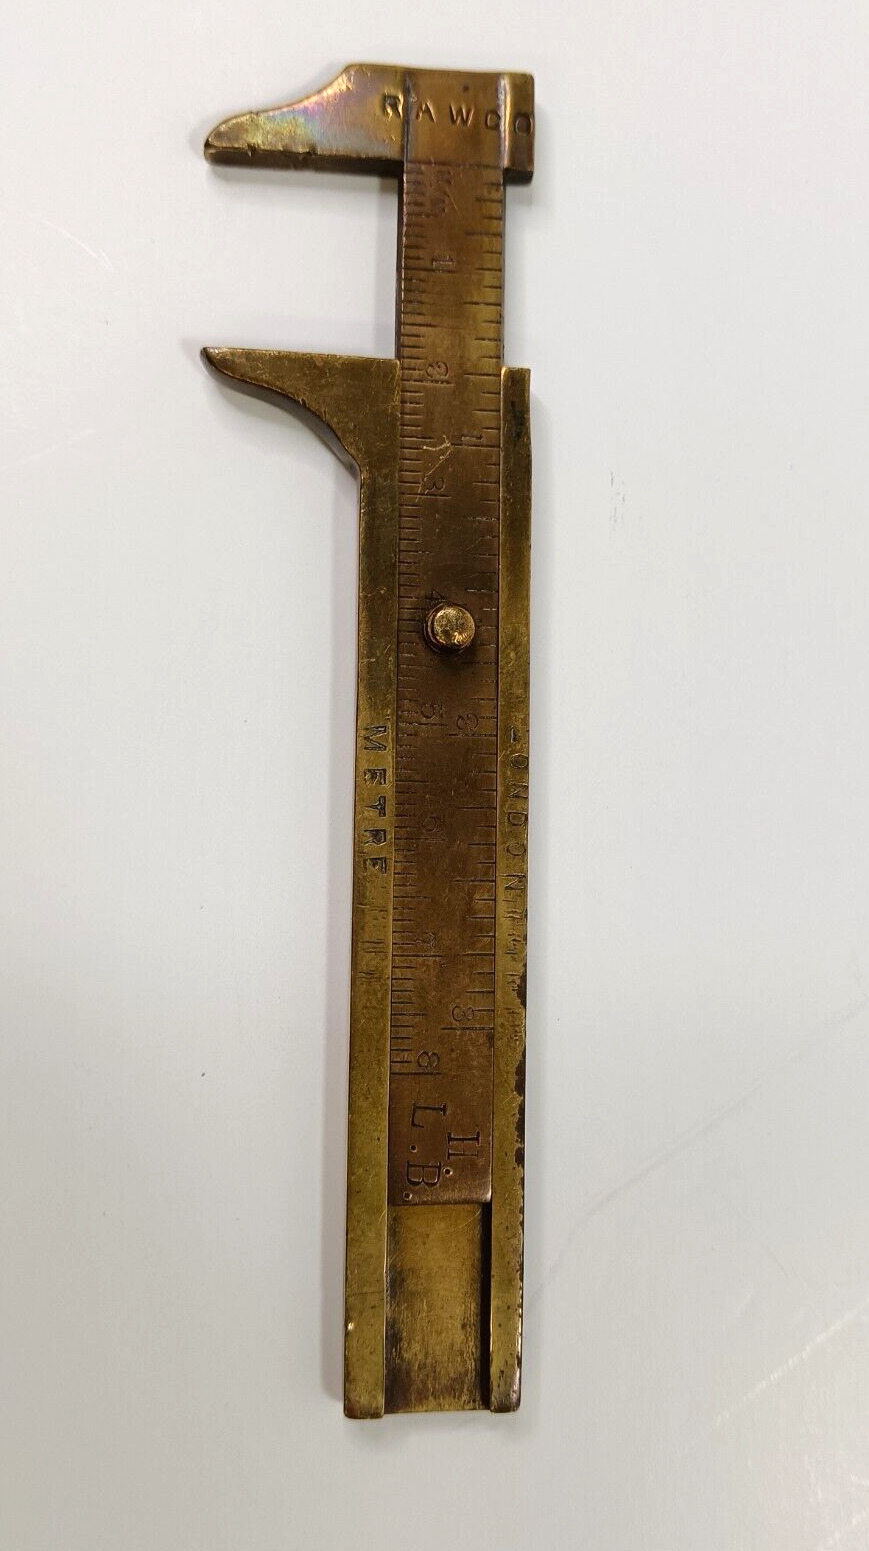 Antique RAWCO Brass Vernier Caliper Measuring Tool 10cm Long